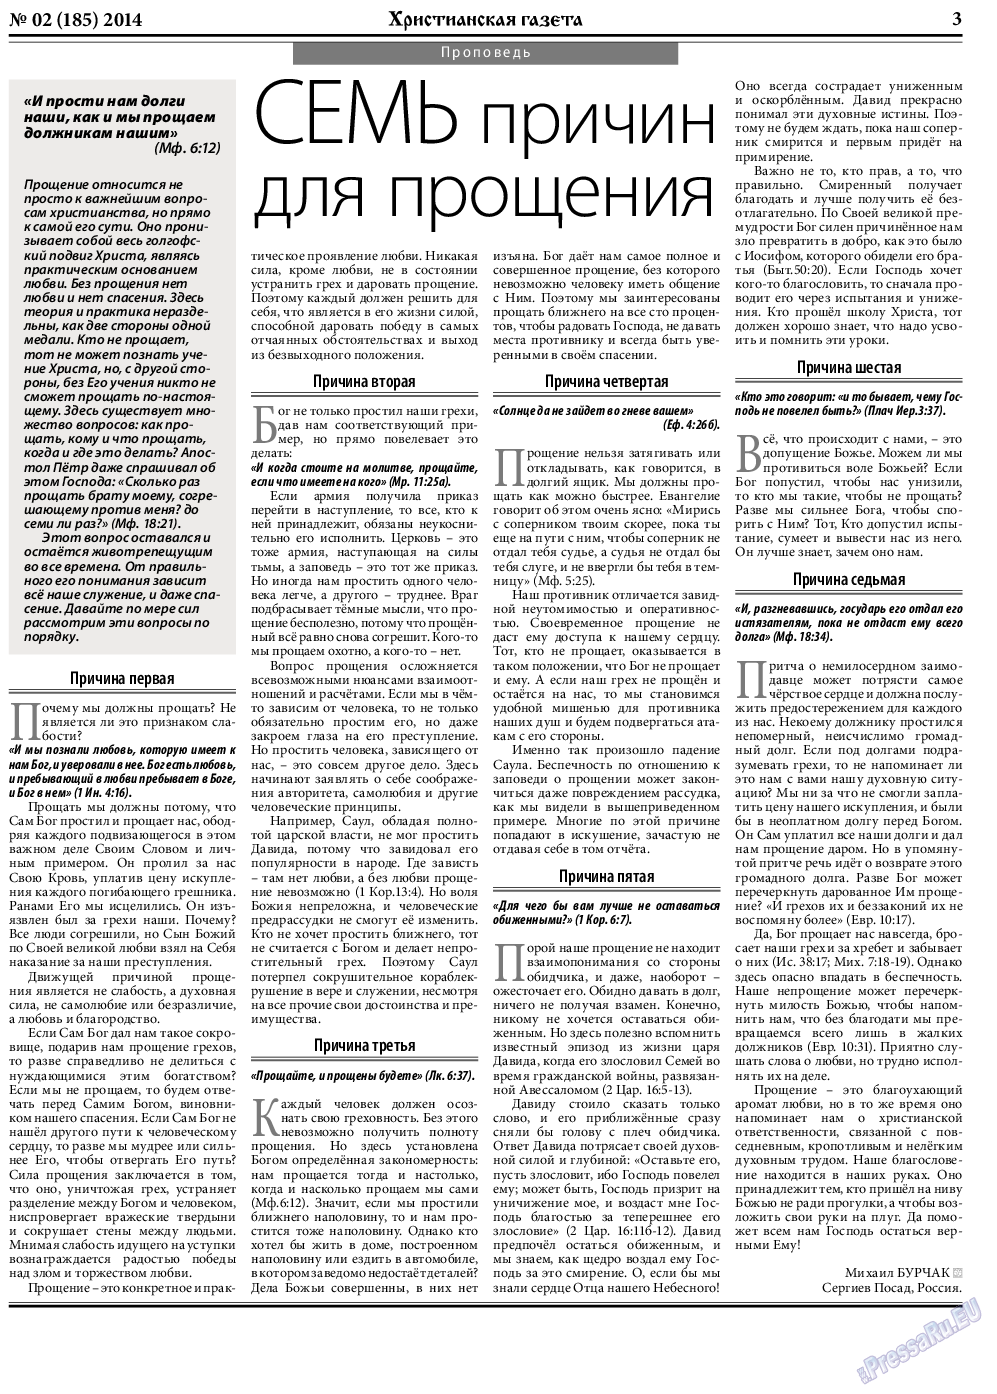 Христианская газета, газета. 2014 №2 стр.3